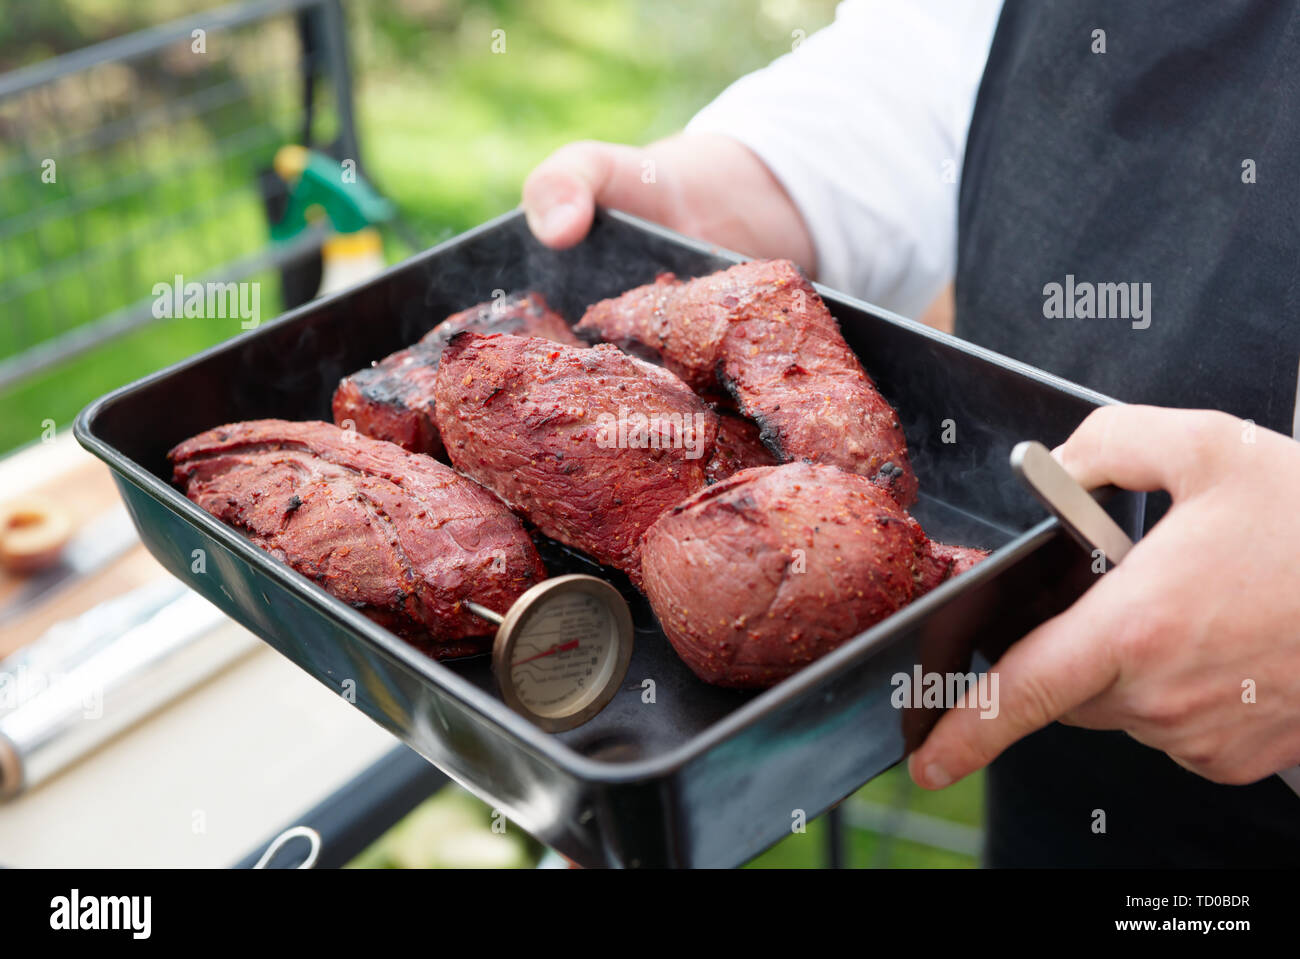 Chef holding un plateau avec la viande cuite, outdooe shot Banque D'Images